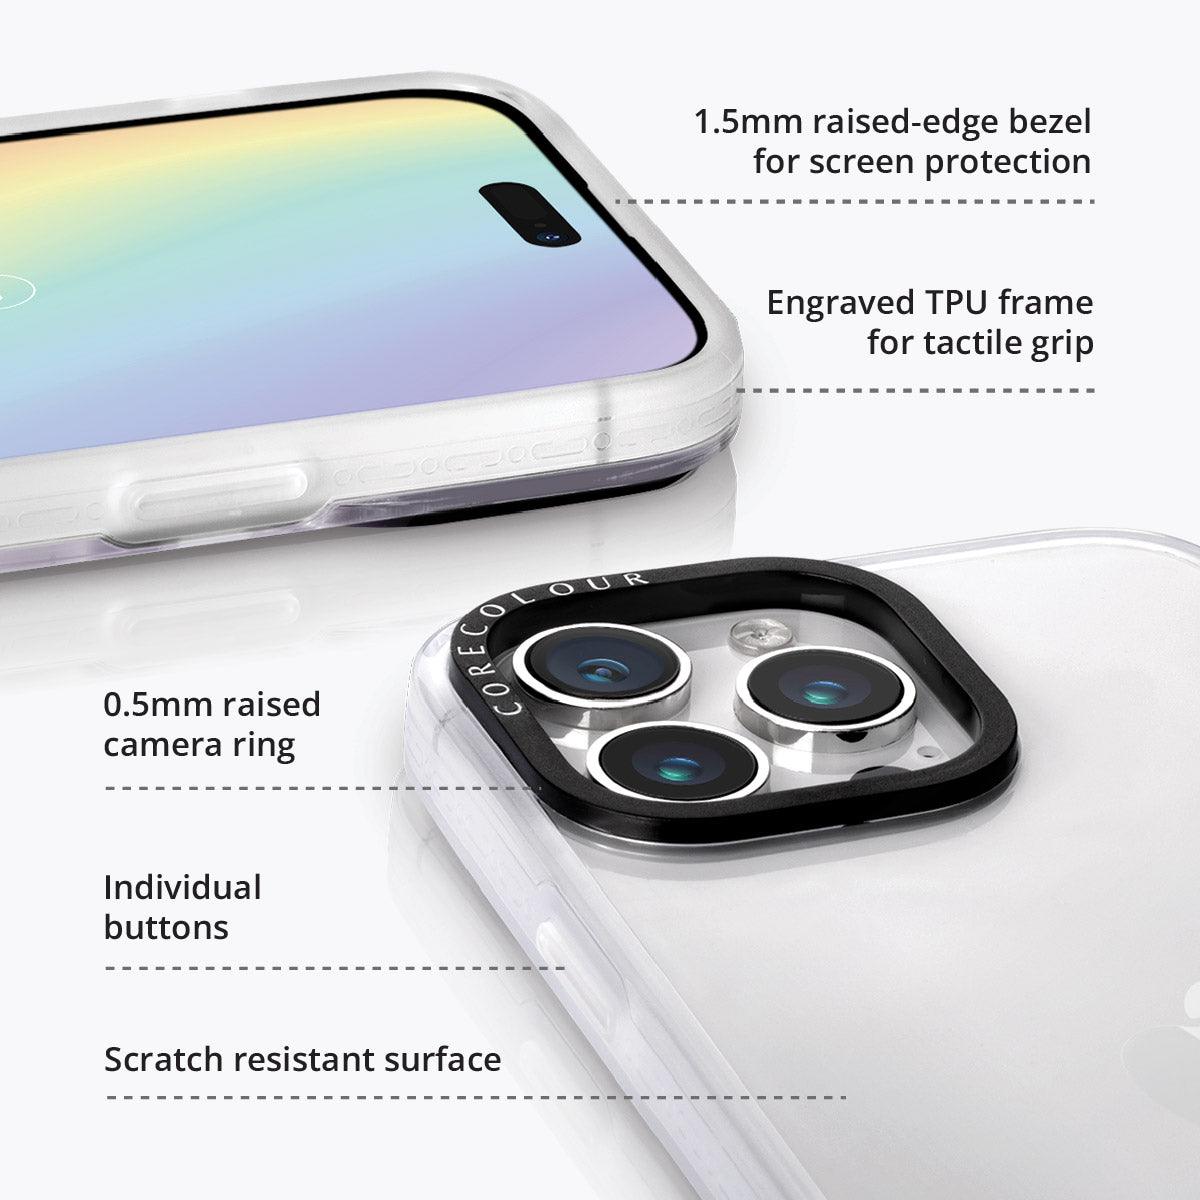 iPhone 12 Pro Lilac Picnic Phone Case - CORECOLOUR AU